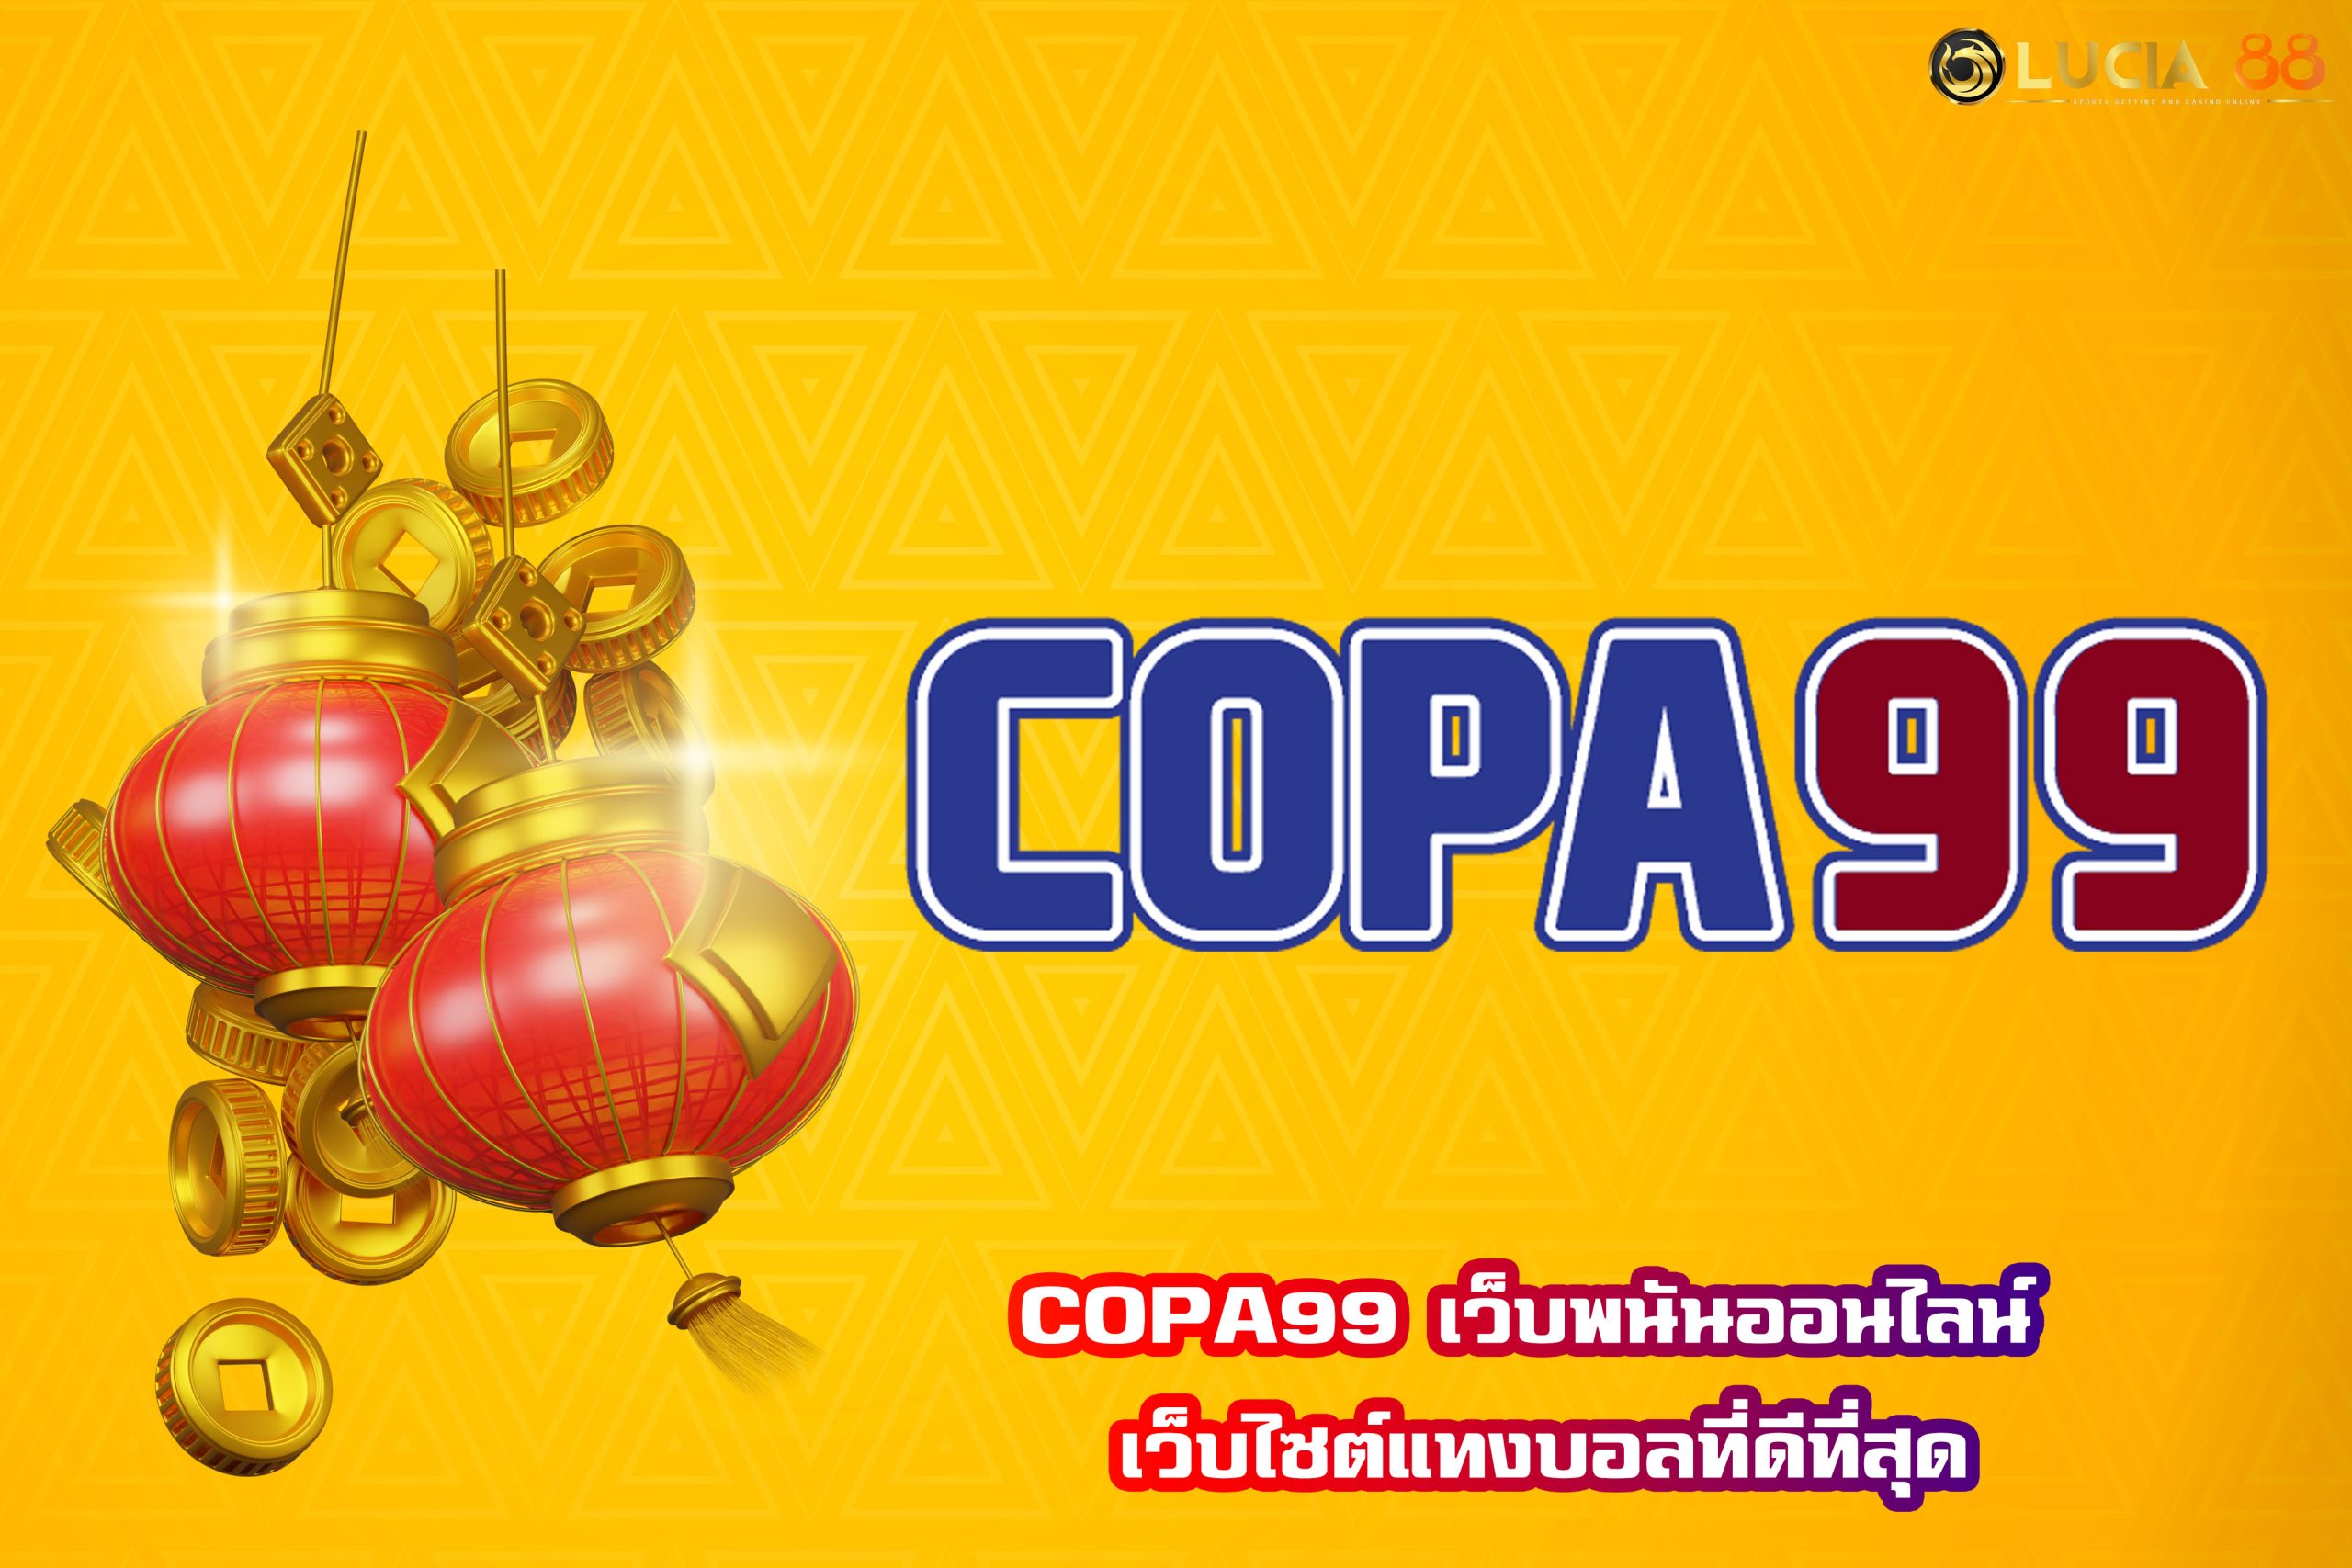 COPA99 เว็บพนันออนไลน์ เว็บไซต์แทงบอลที่ดีที่สุด